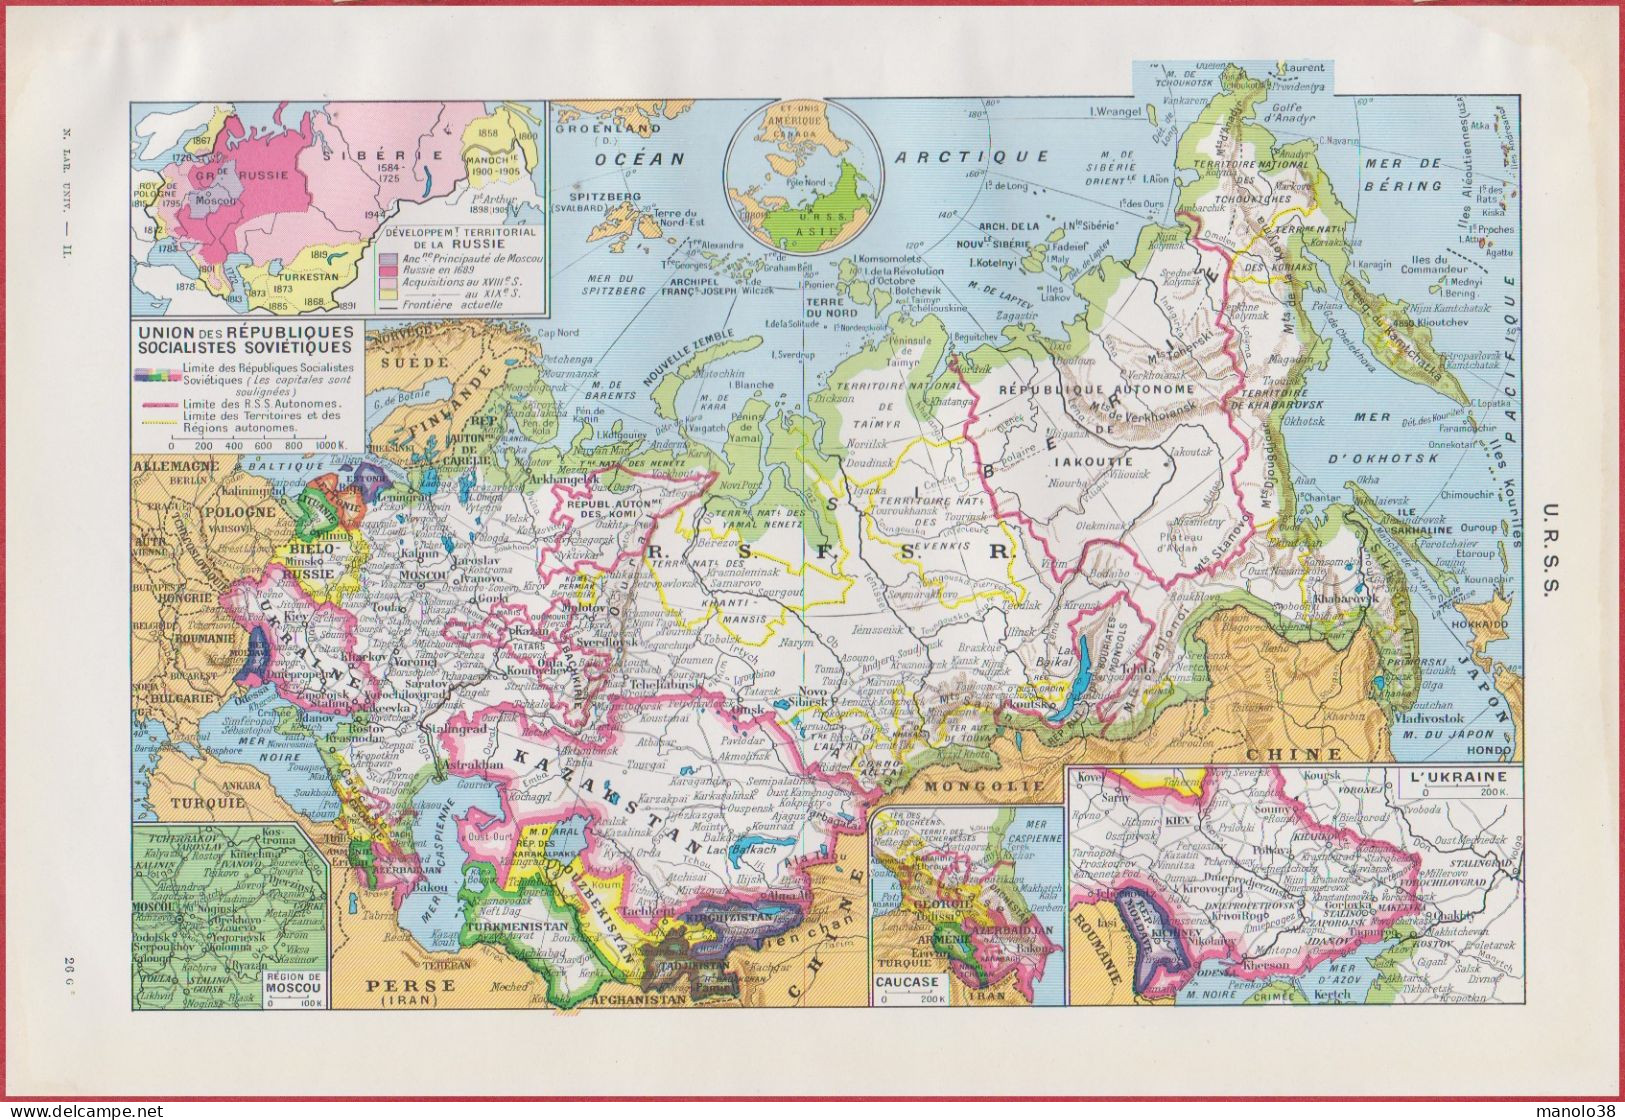 Carte De L'URSS. Russie. Ukraine. Développement Territorial. Carte économique. Divers Vues. Larousse 1948. - Historische Documenten